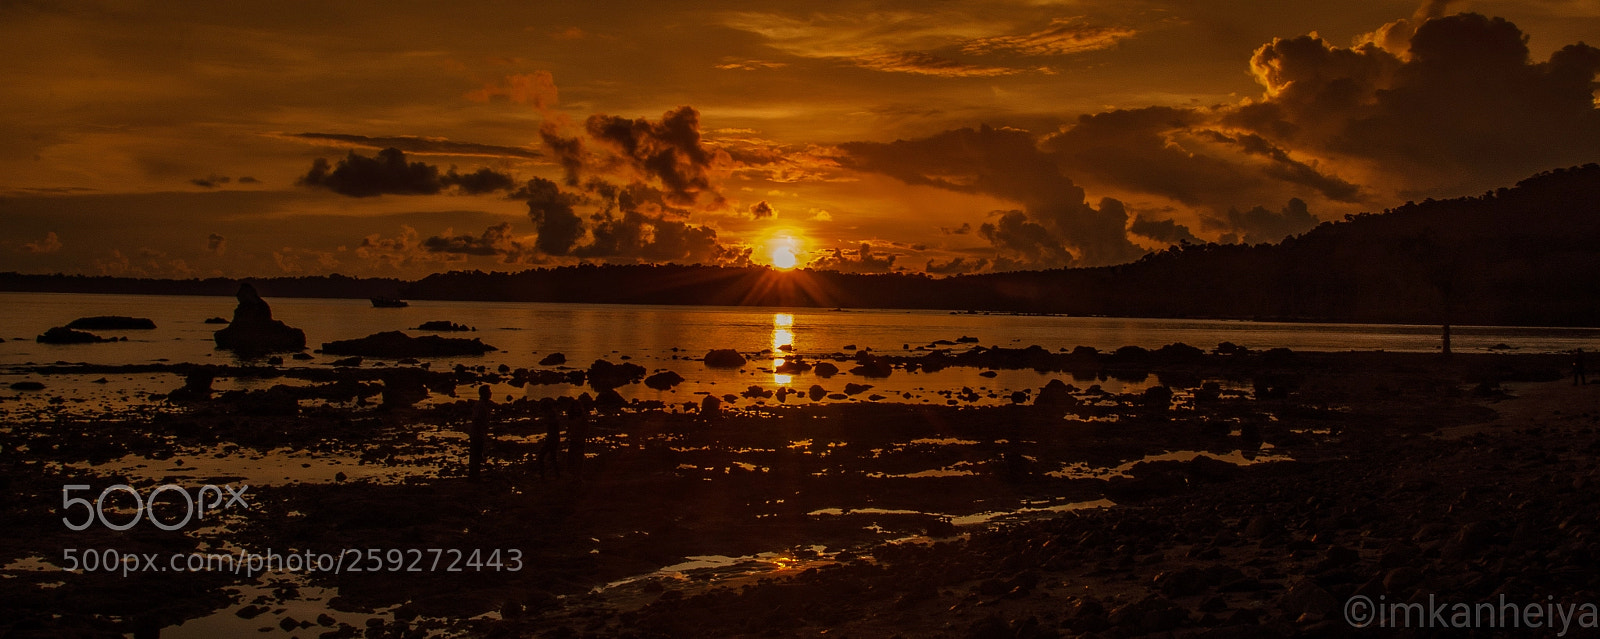 Nikon D7000 sample photo. Sunset at bird tapu photography